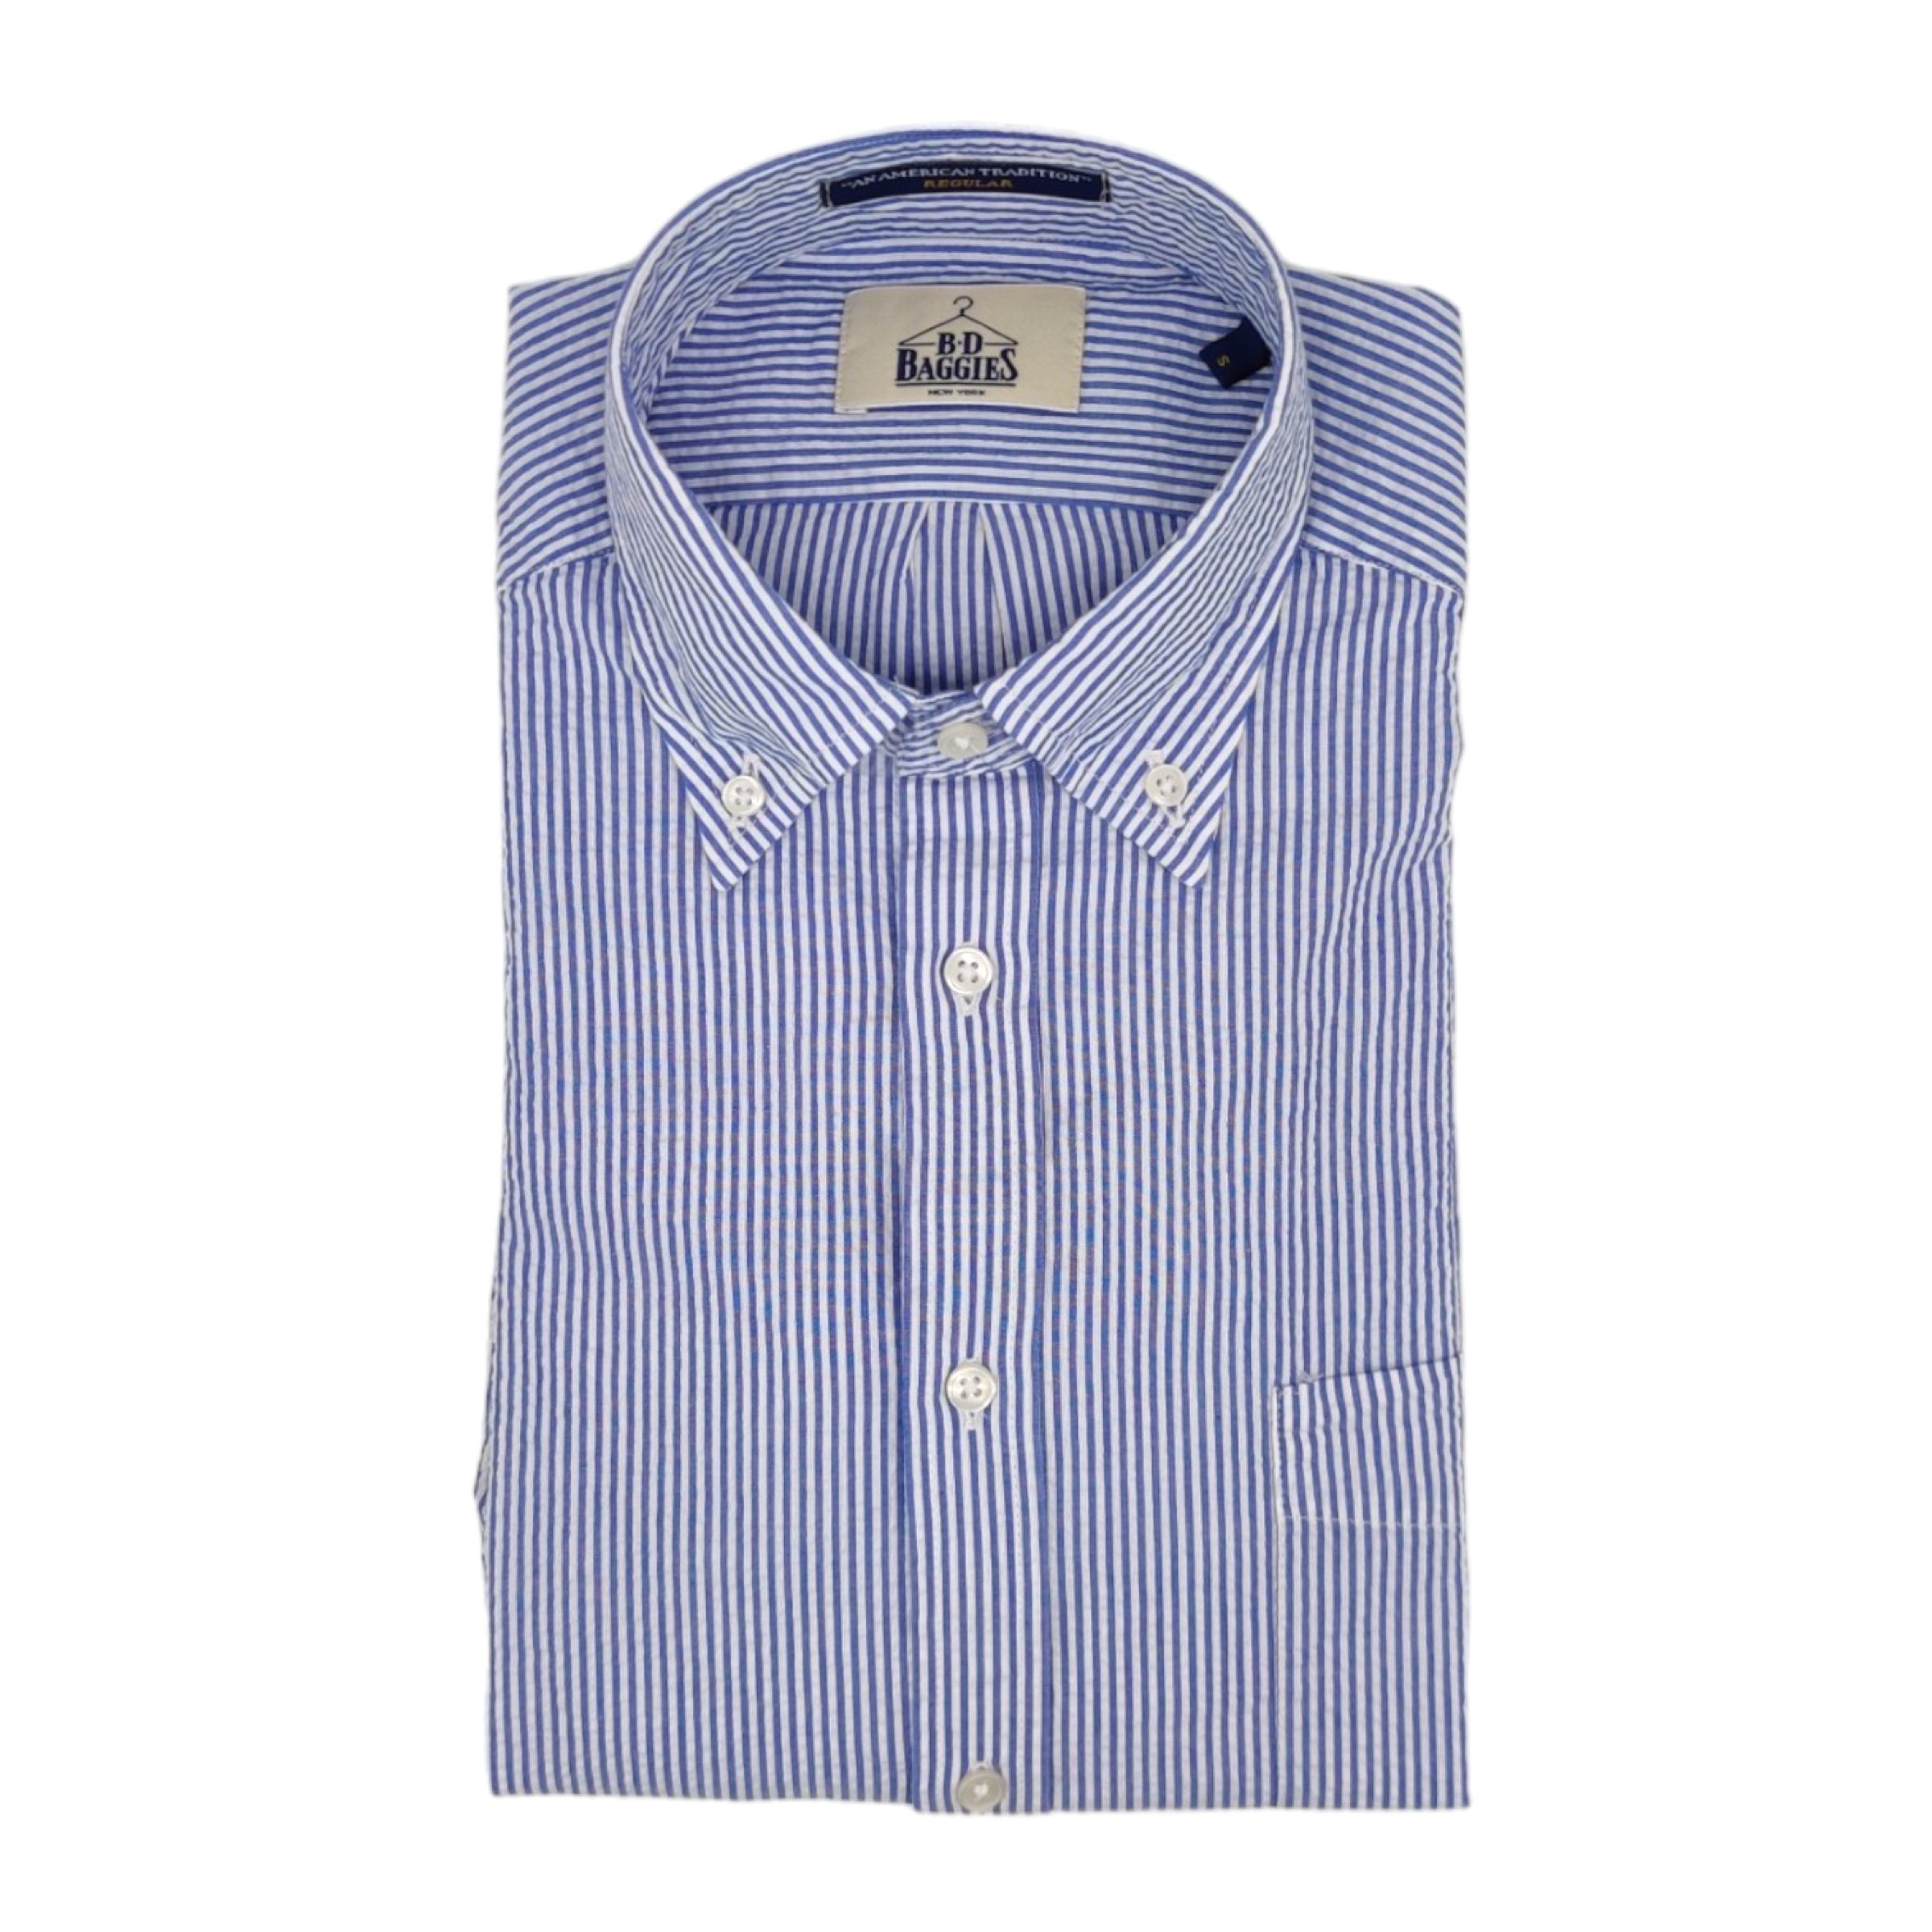 BD BAGGIES Camicia Bradford Cotton Stripes Uomo White/blue